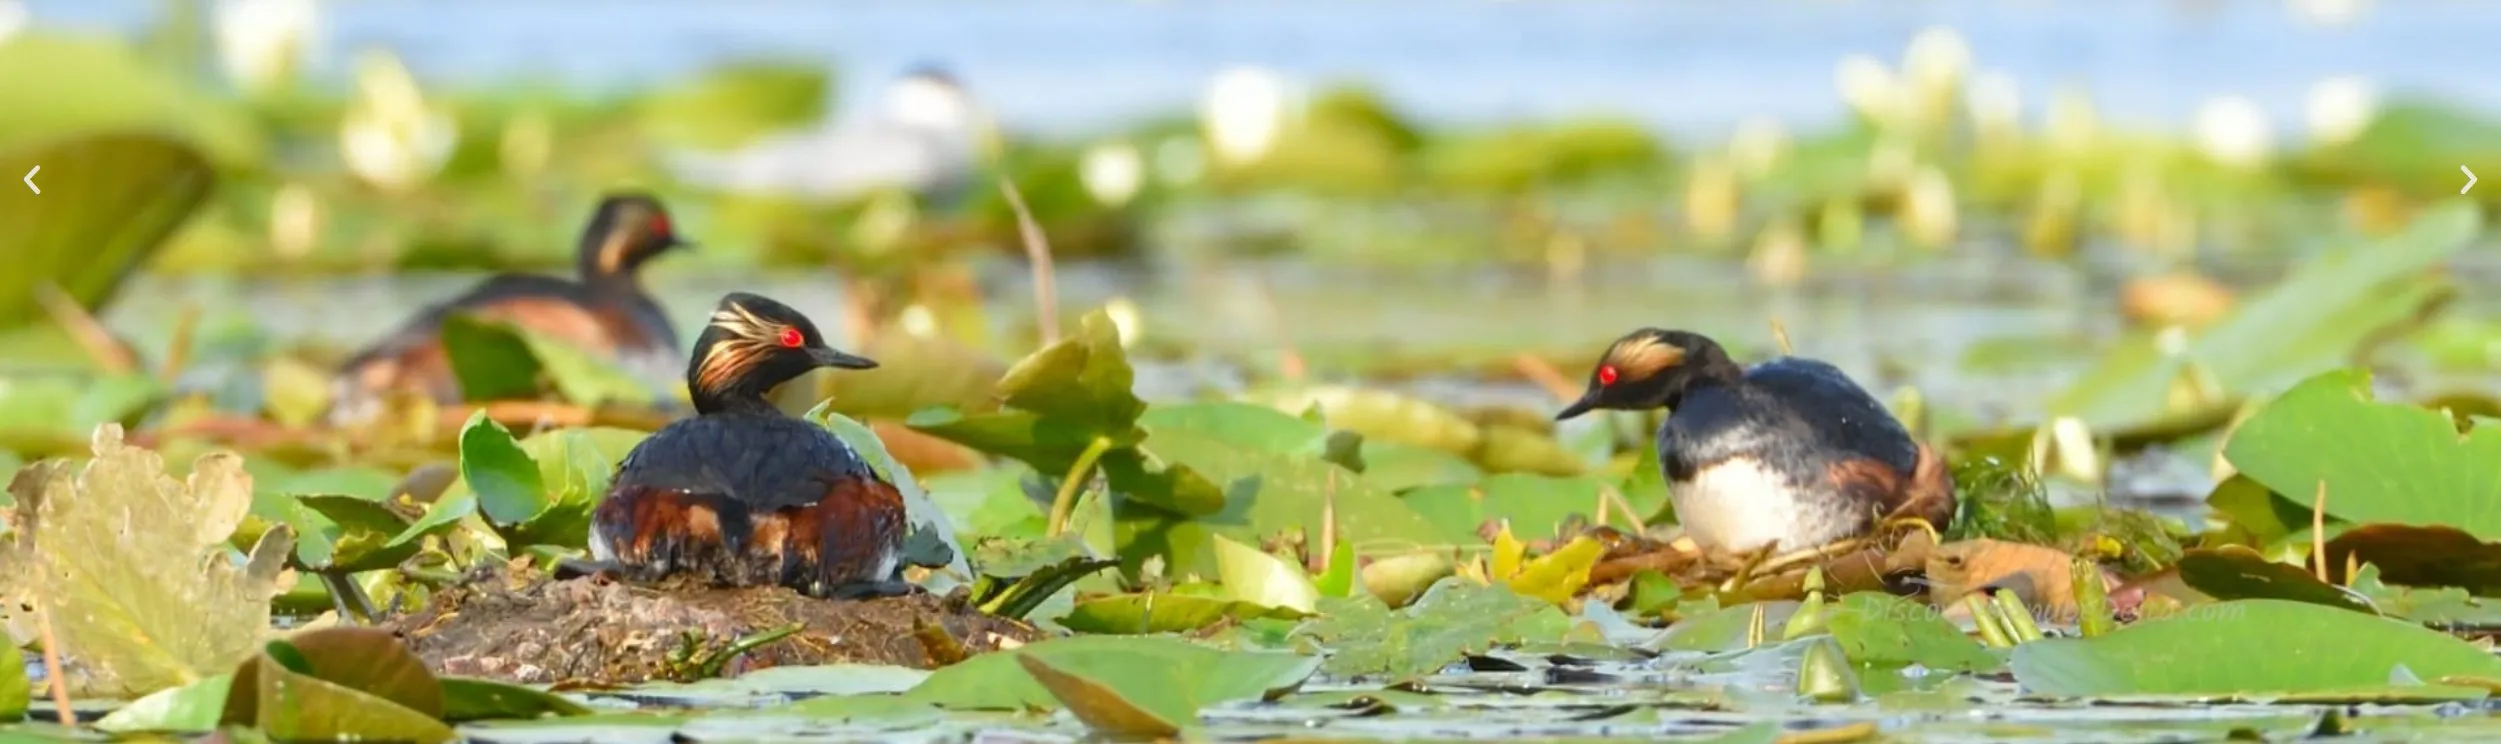 Duna Delta - Természetbúvároknak kínált programok: madarak megfigyelése, filmezése, fényképezése